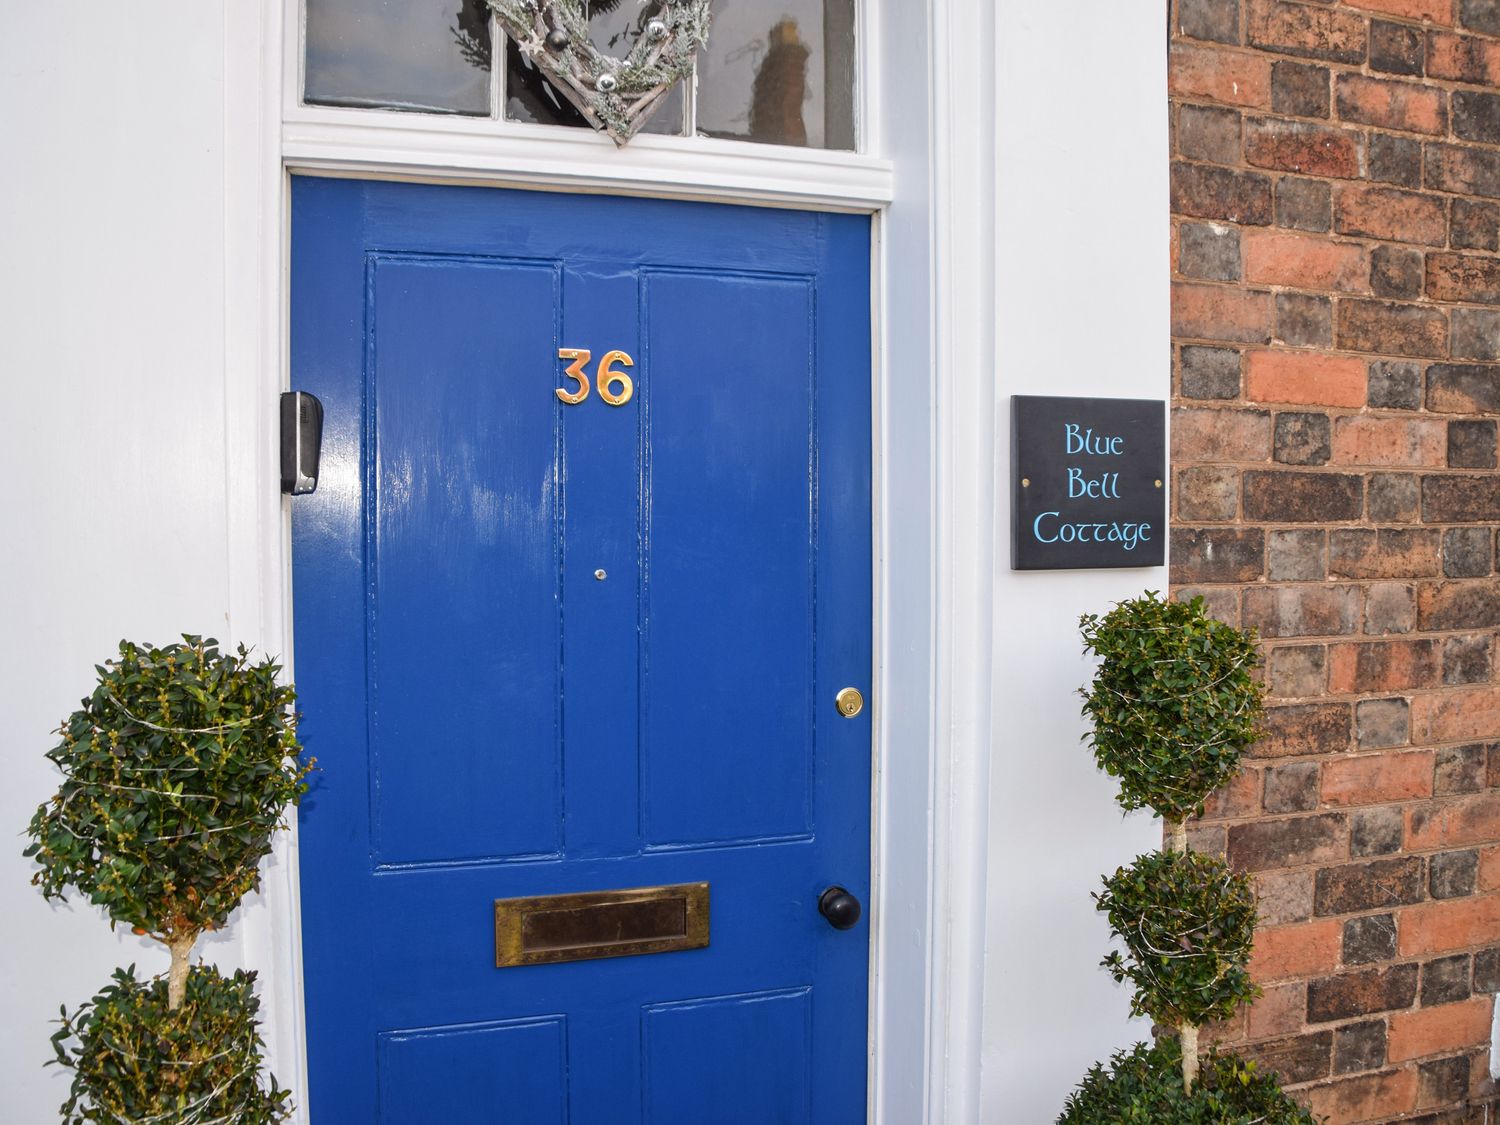 36 Blue Bell Cottage, Tiddington